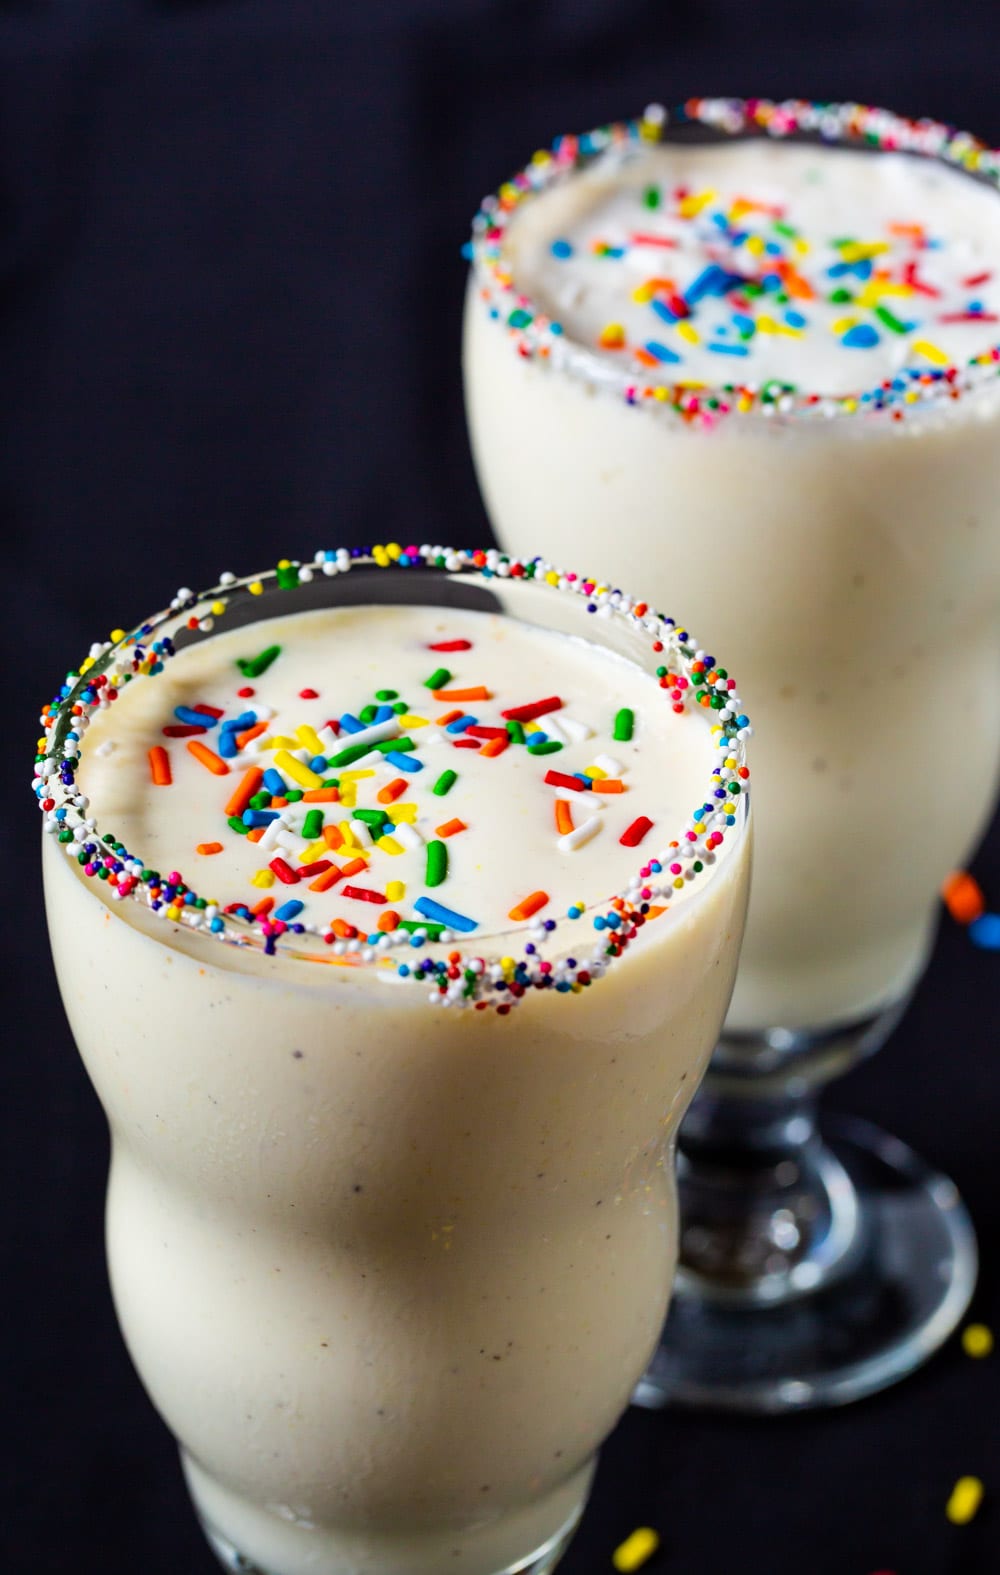 Milkshakes in two glasses with sprinkles on top.